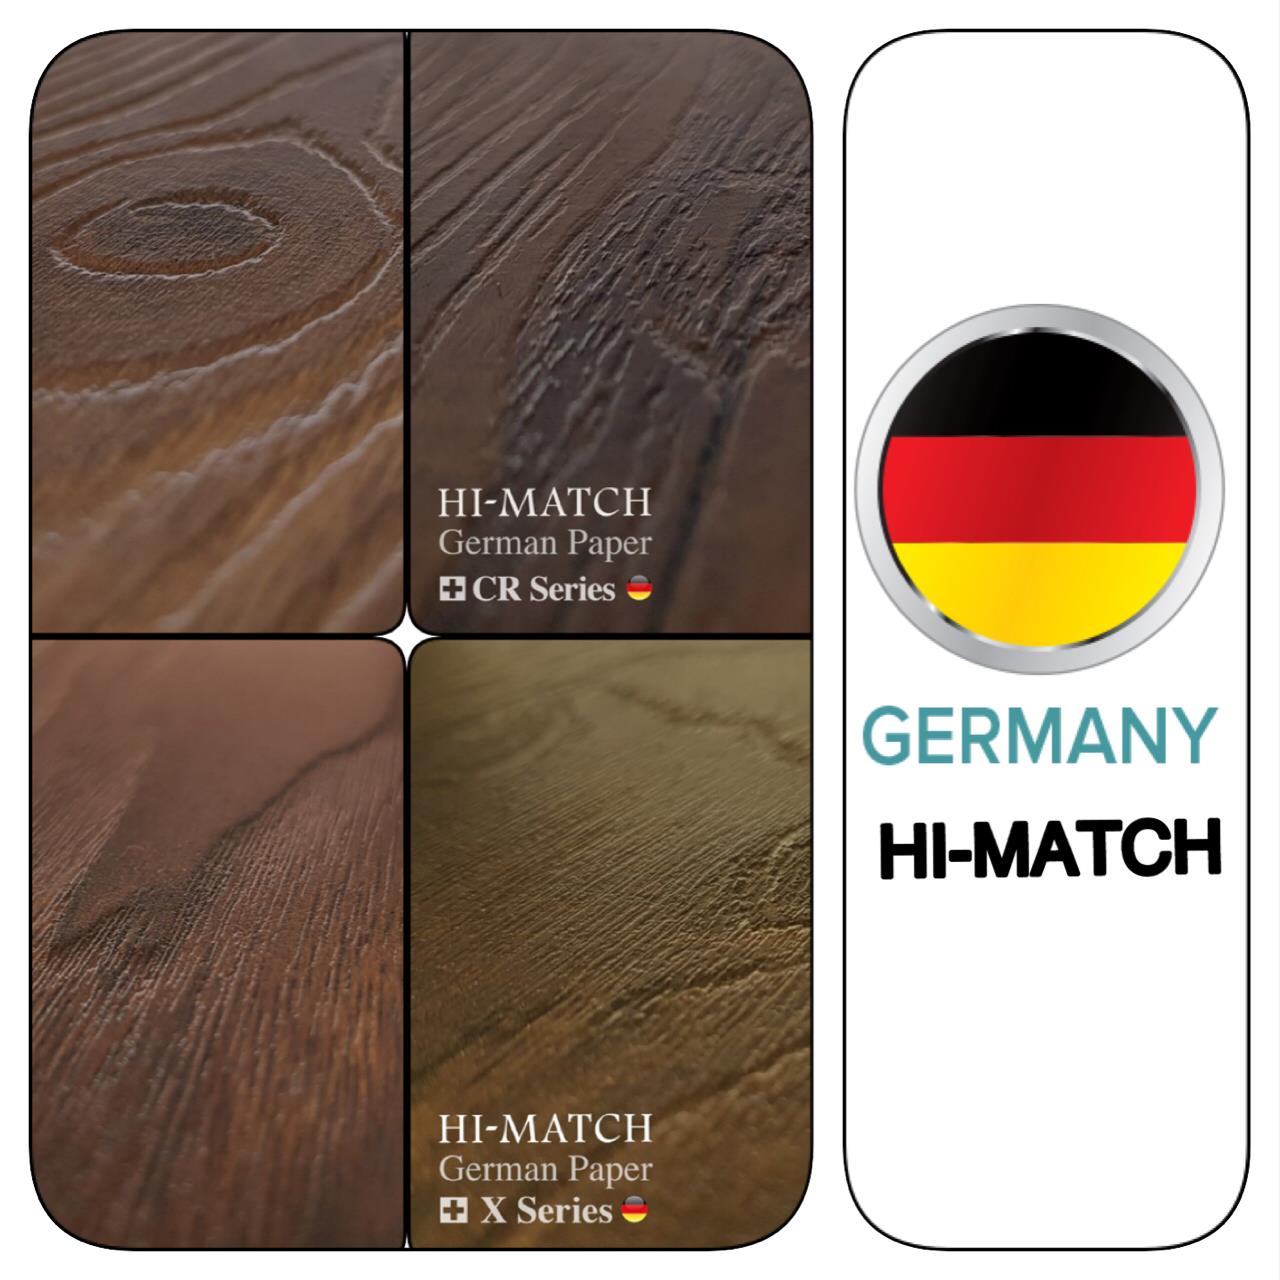 ورقهاي-فوق-برجسته-hi-match-ساخته-شده-با-خطوط-ومونر-آلمان